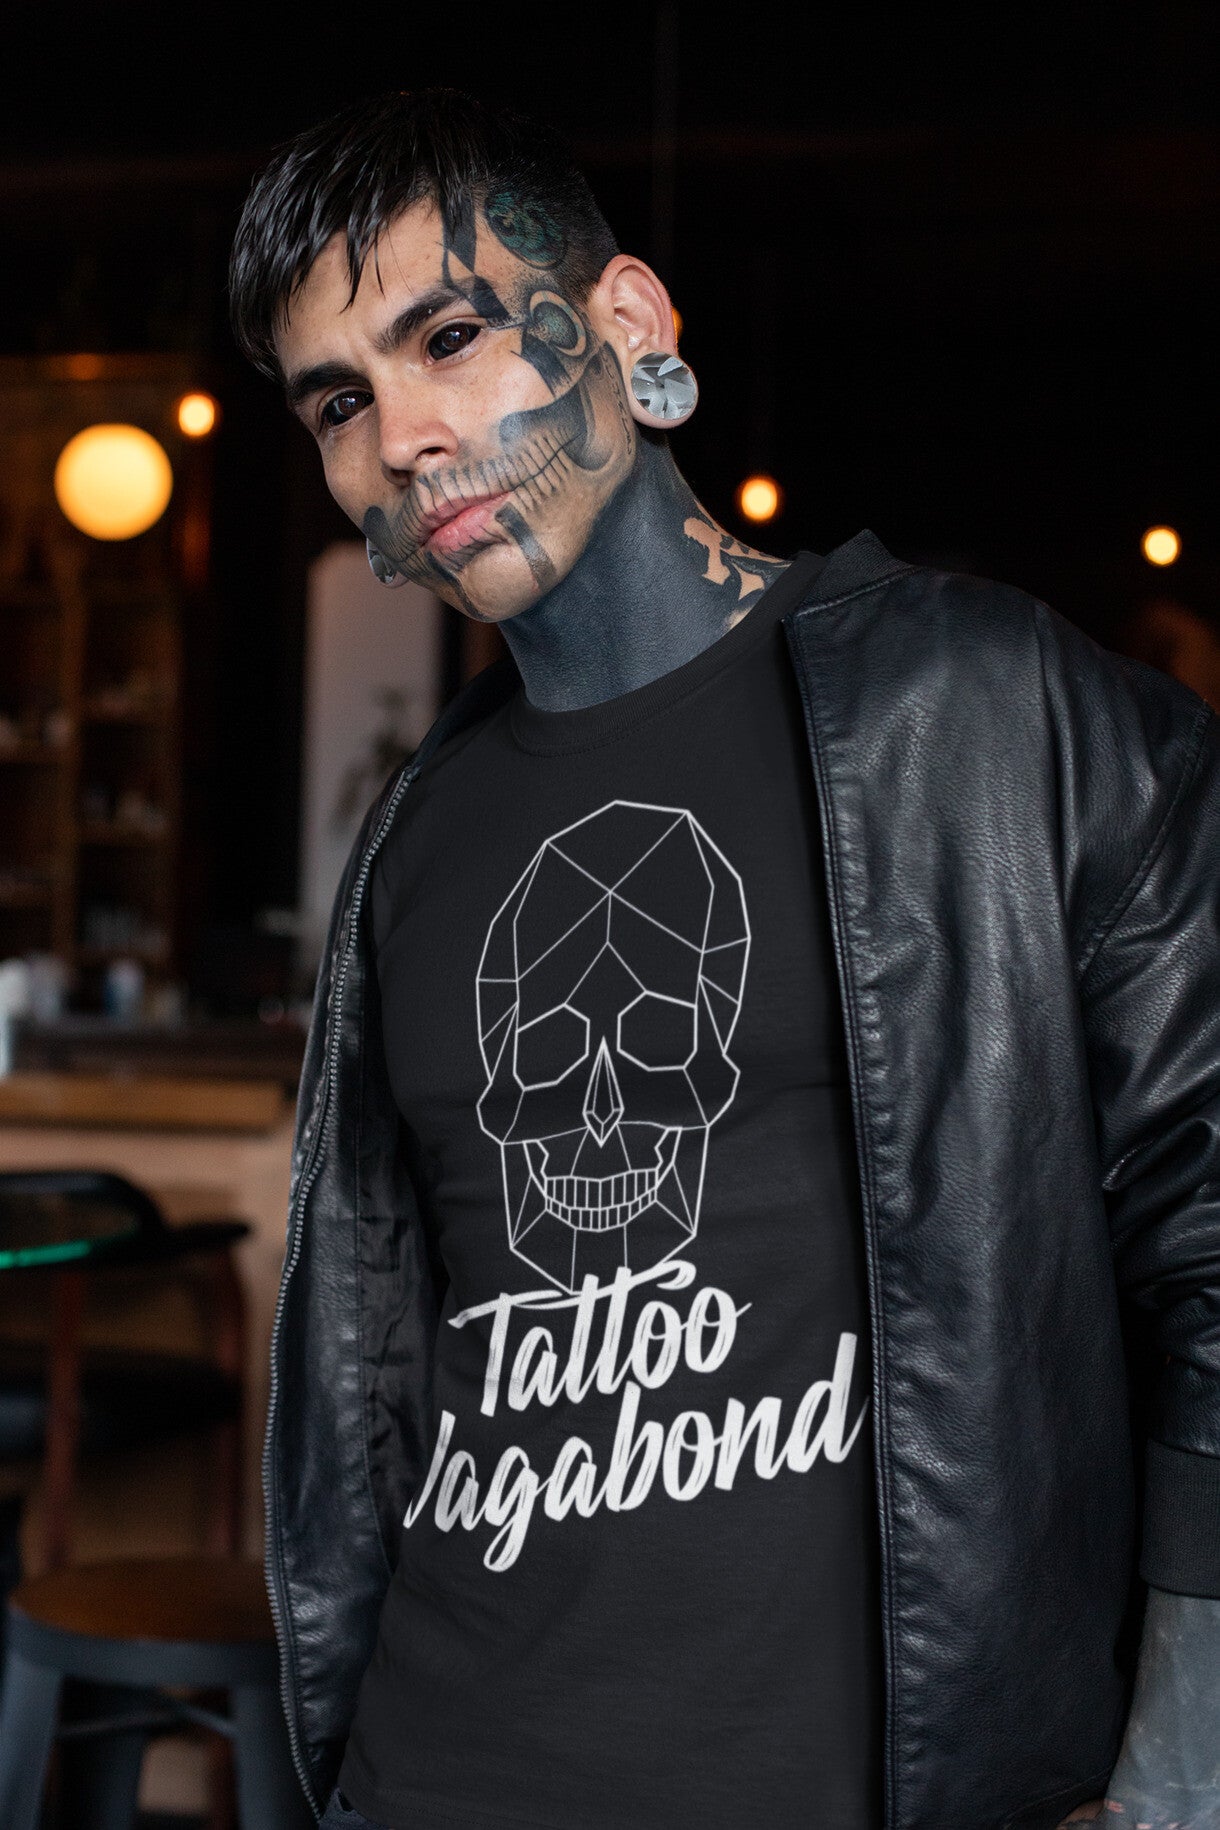 Tattoo Vagabond Basic Logo T-Shirt Black - Tattoo Vagabond